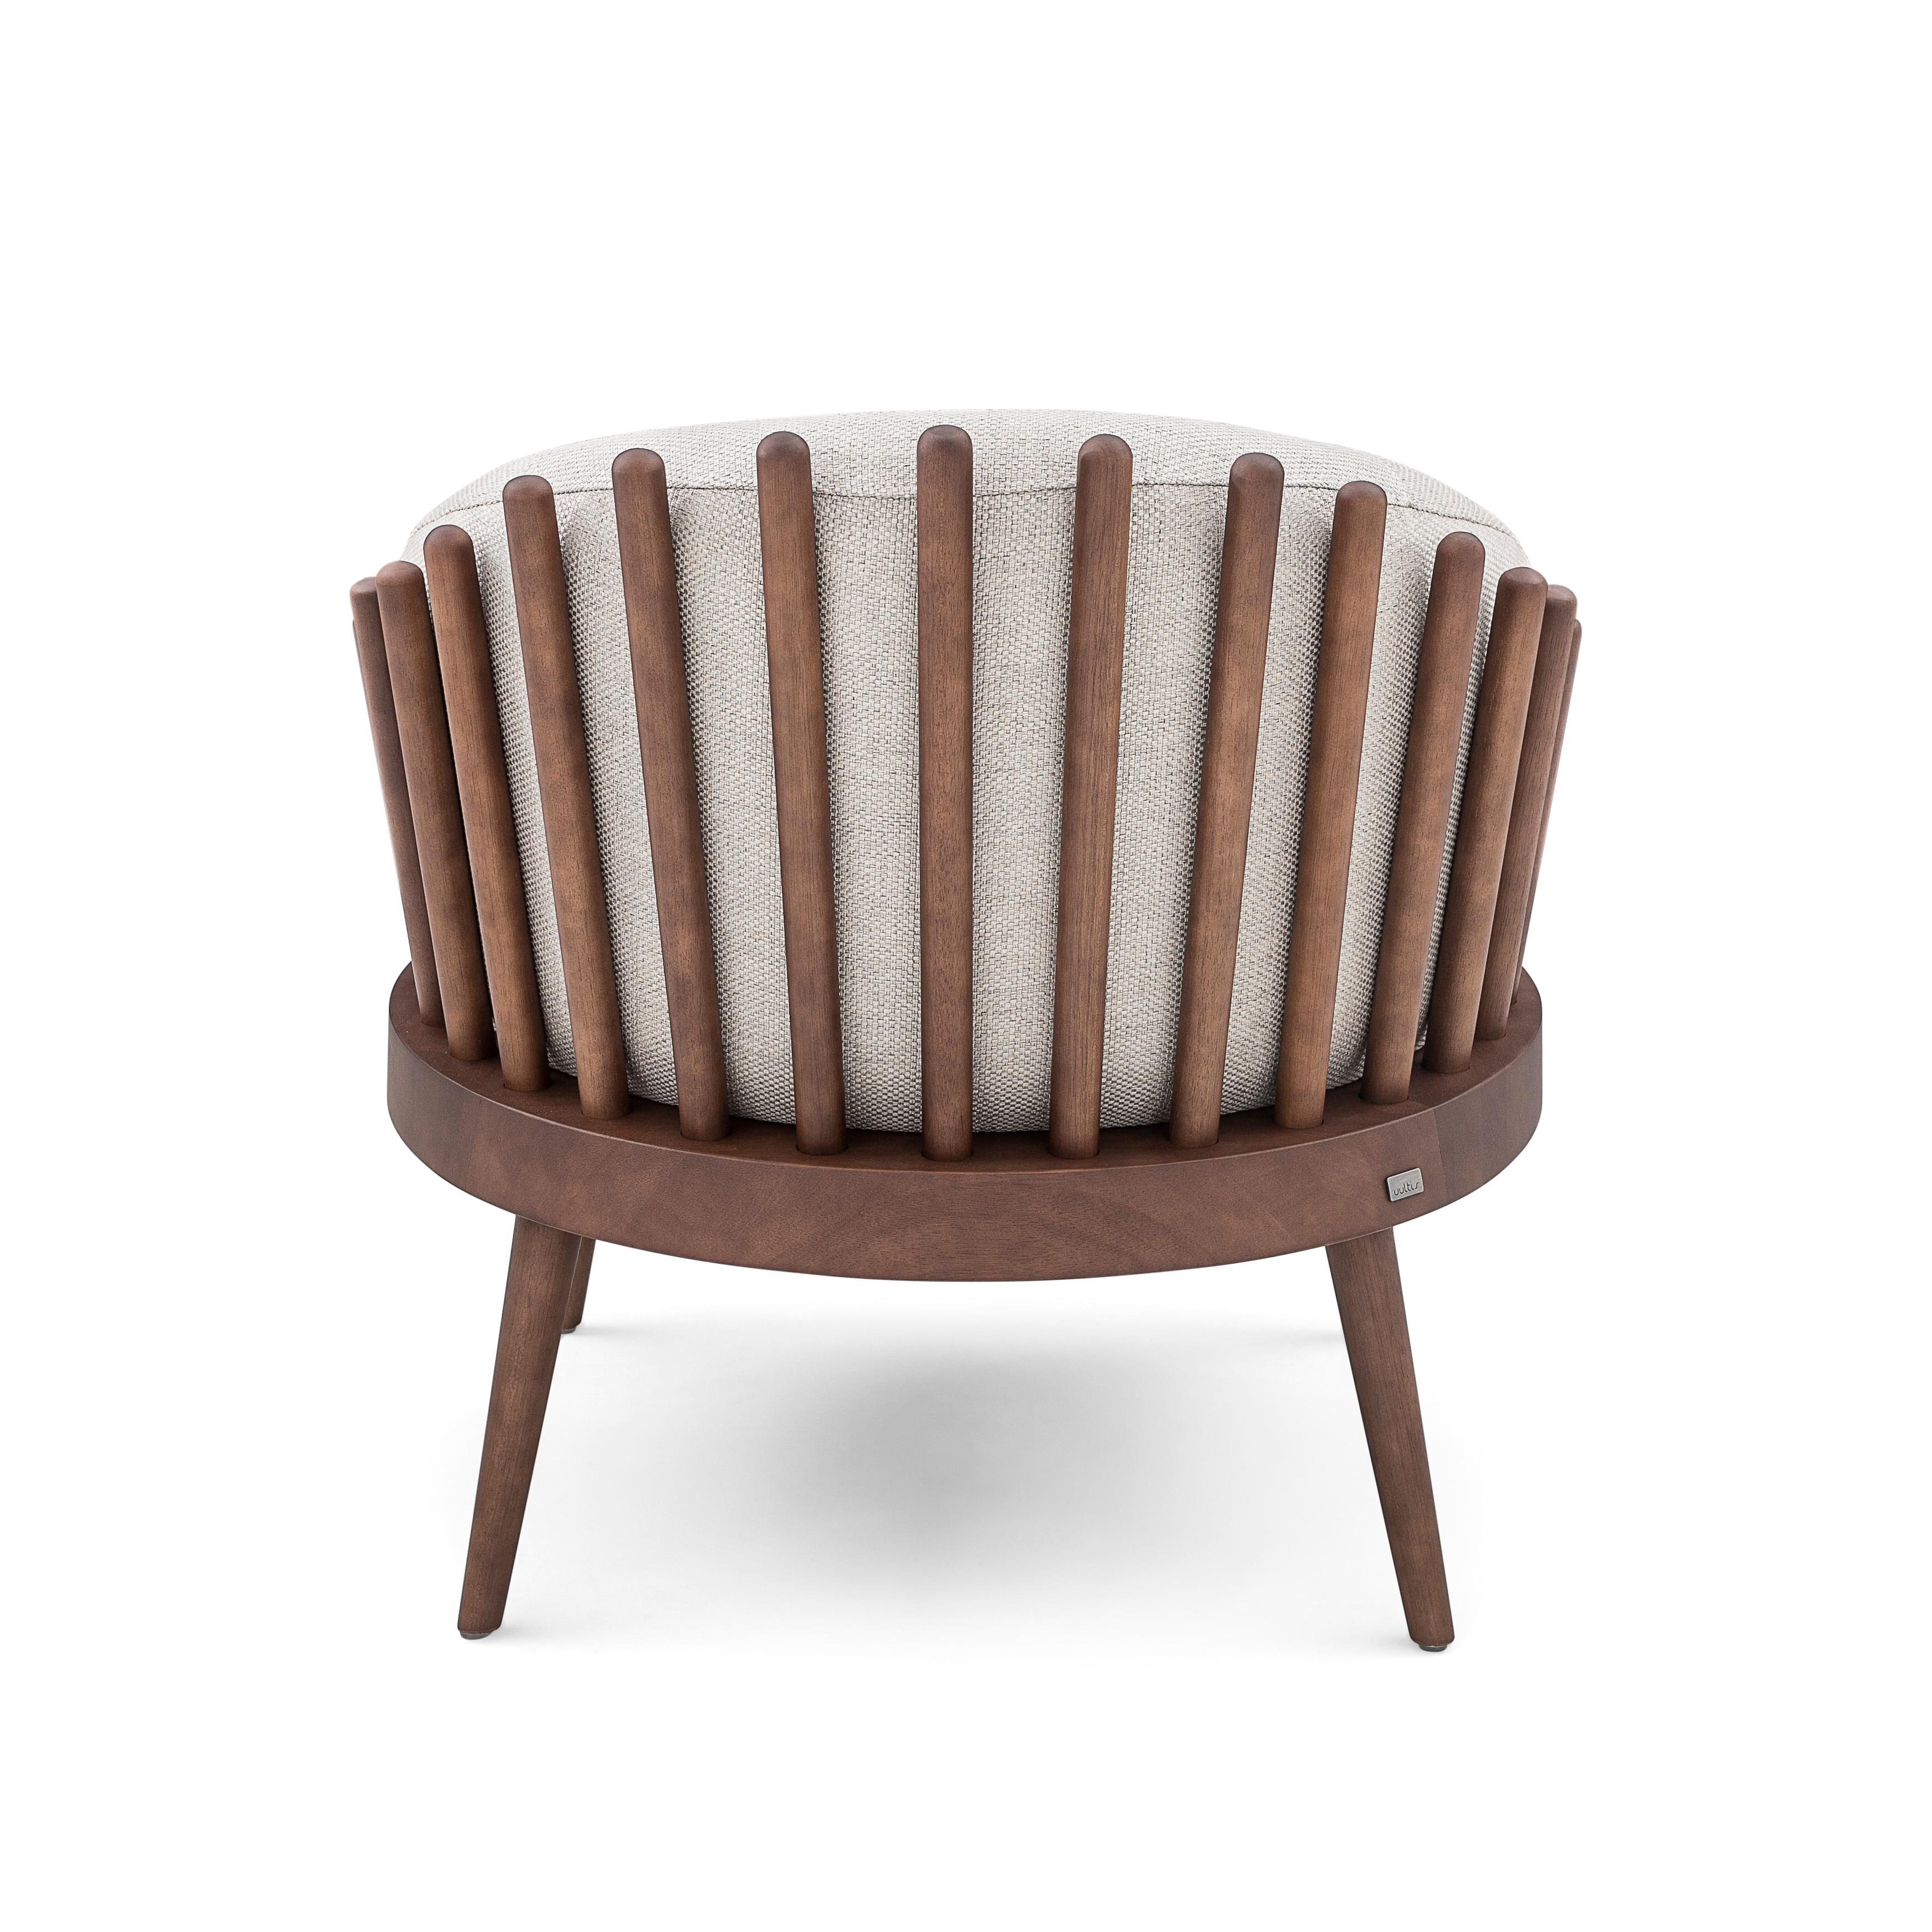 L'équipe de designers d'Uultis a créé ce magnifique fauteuil Fane, revêtu d'un beau tissu blanc cassé très doux, associé à une finition en bois de noyer. Cette magnifique création offrira un espace confortable parfait avec son assise et son dossier